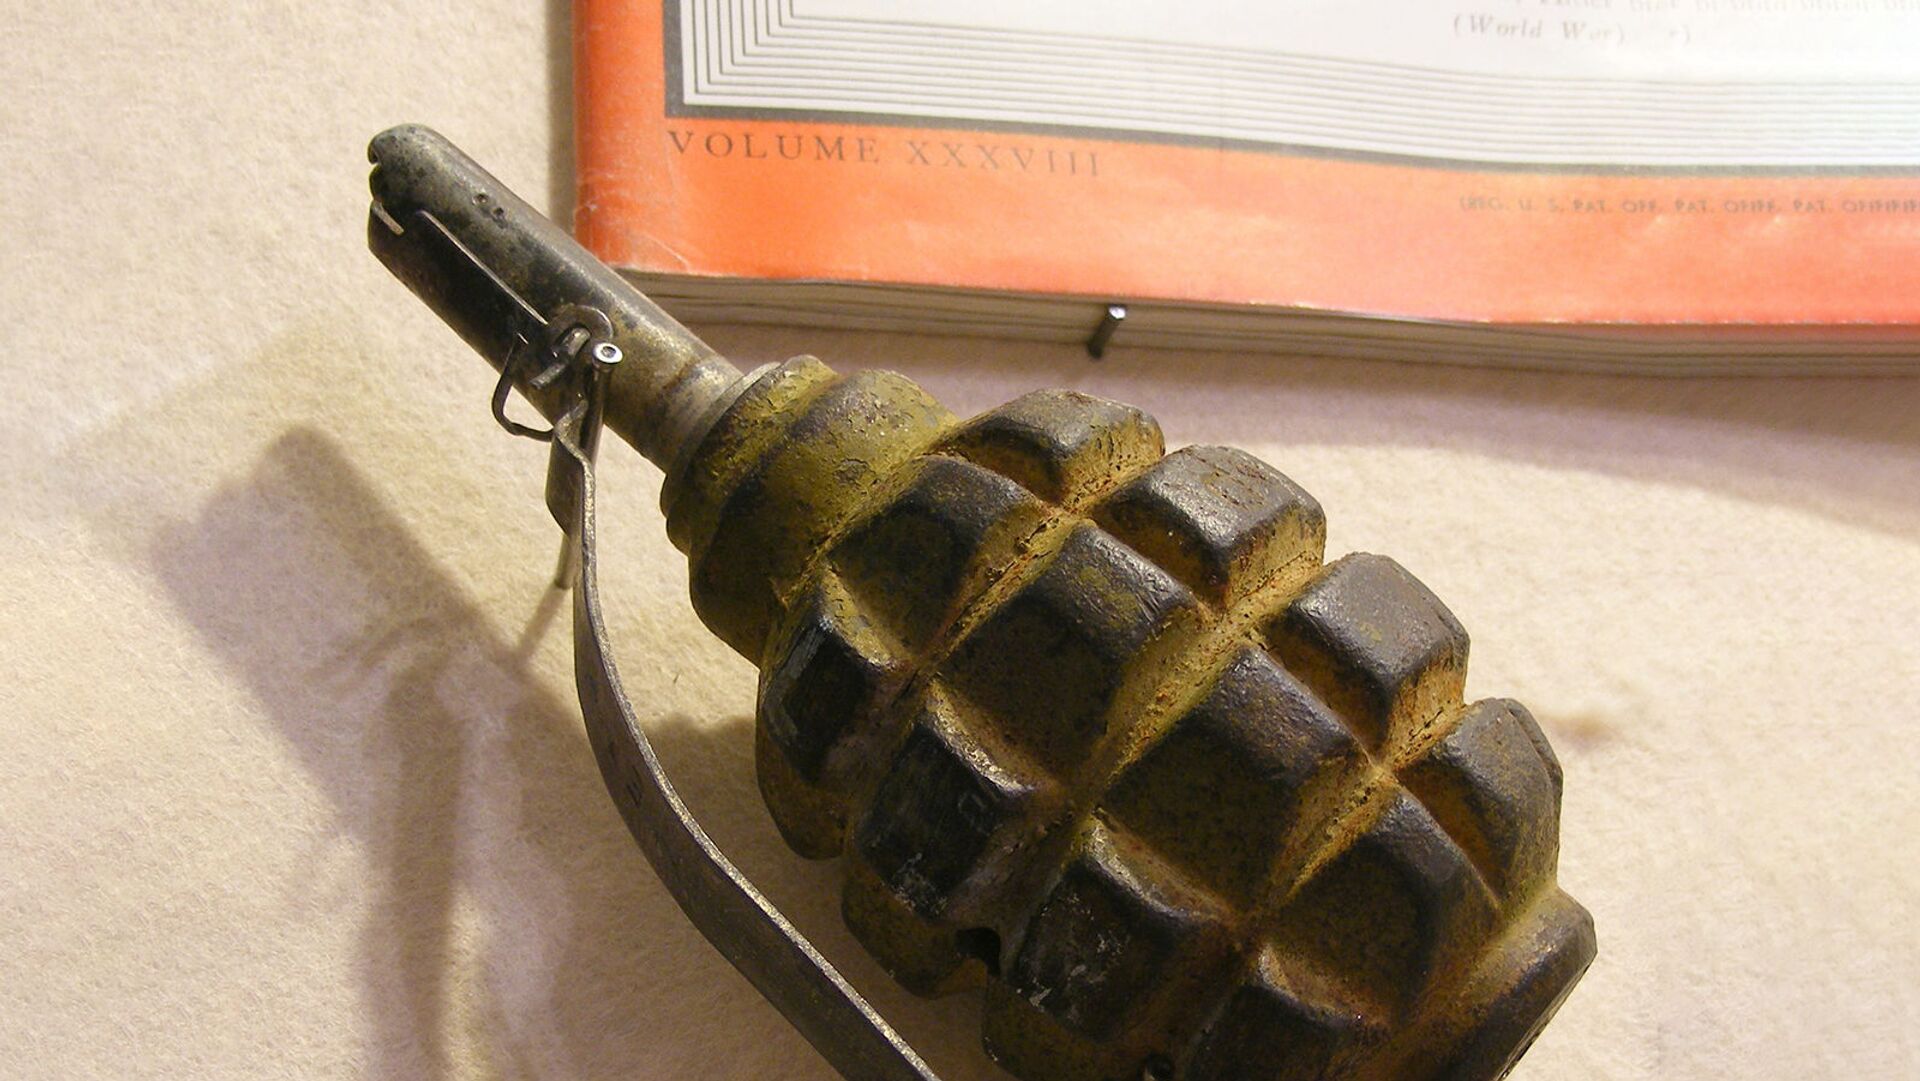 Ручная противопехотная оборонительная граната Ф-1 (лимонка) - Sputnik Армения, 1920, 26.07.2021